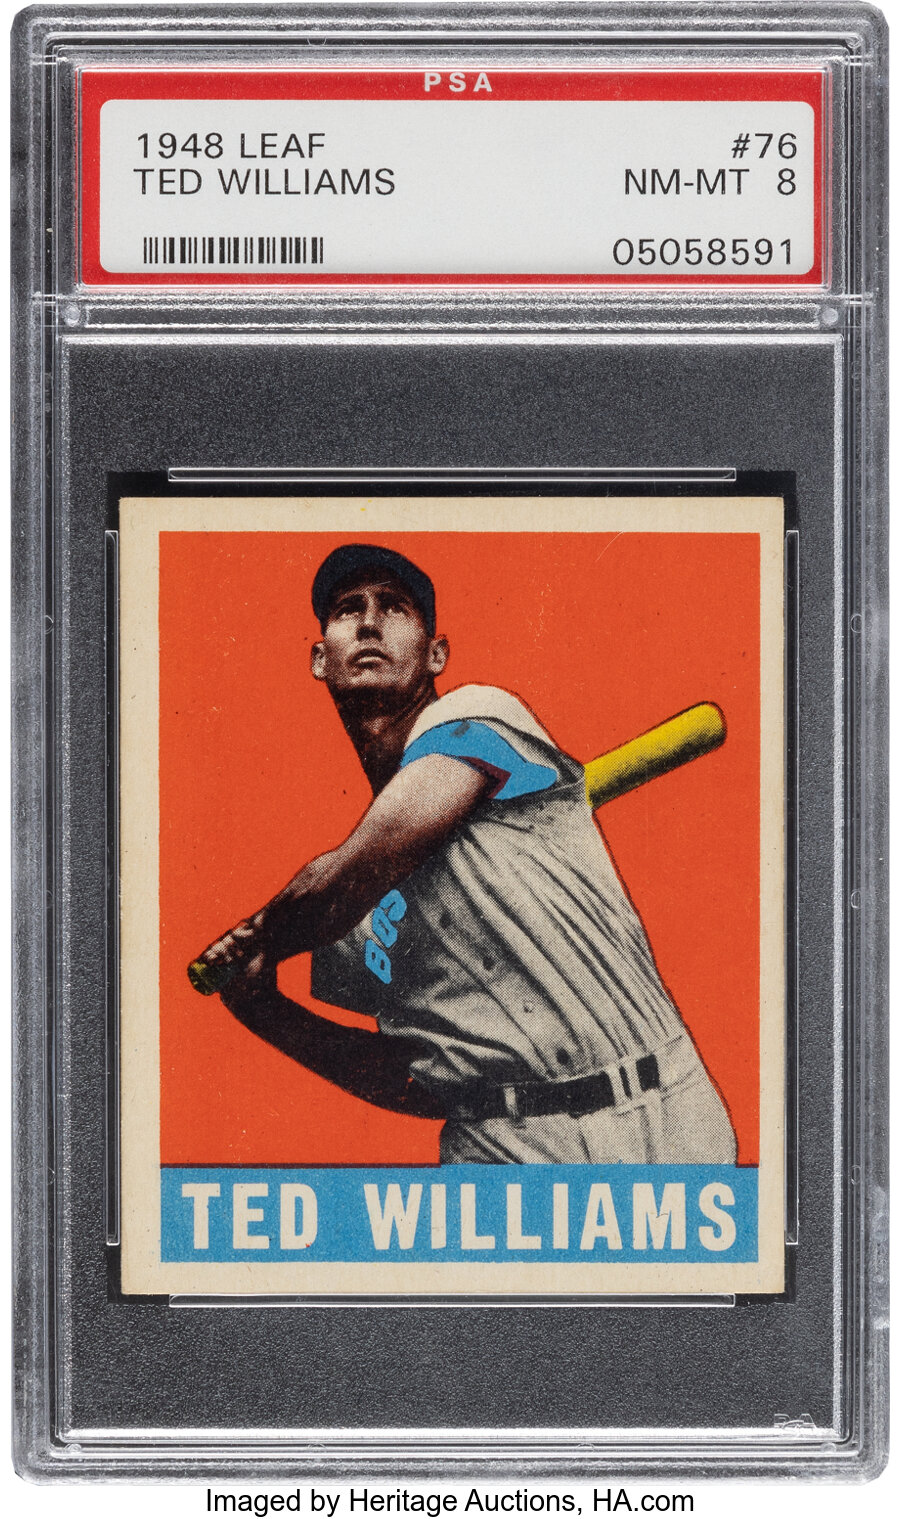 1948 Leaf Ted Williams #76 PSA NM-MT 8